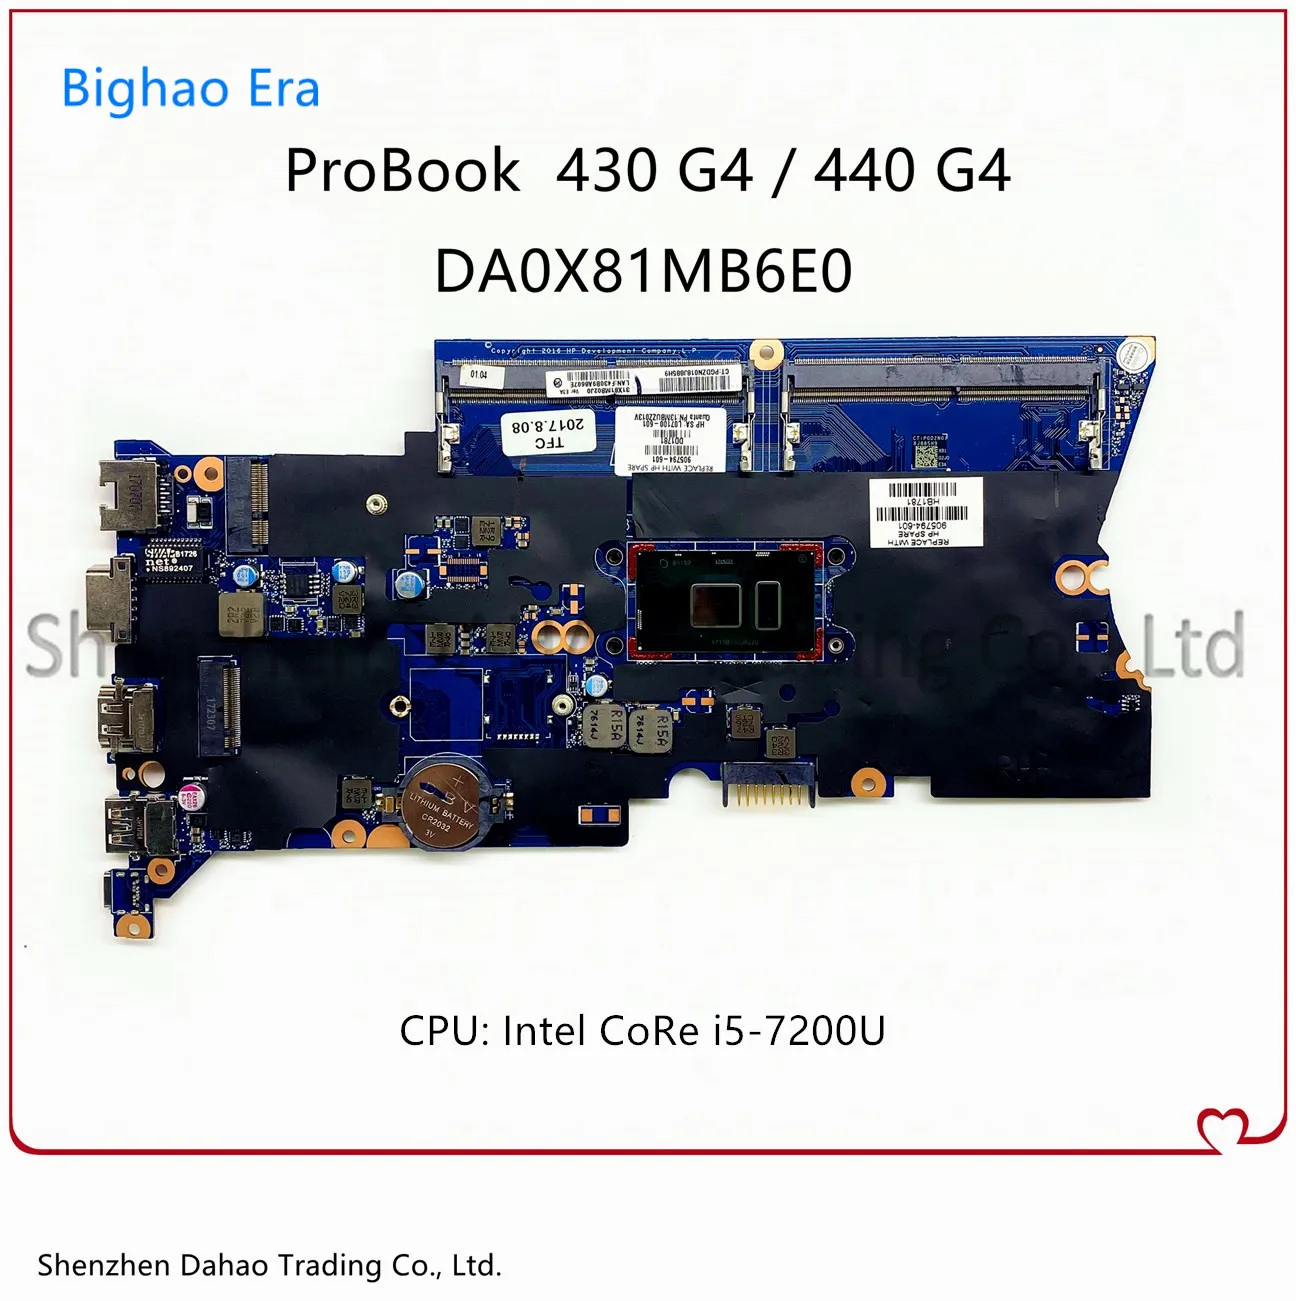 Материнская плата DA0X81MB6E0 для HP Probook 430 G4 440 материнская ноутбука с процессором I5-7200U